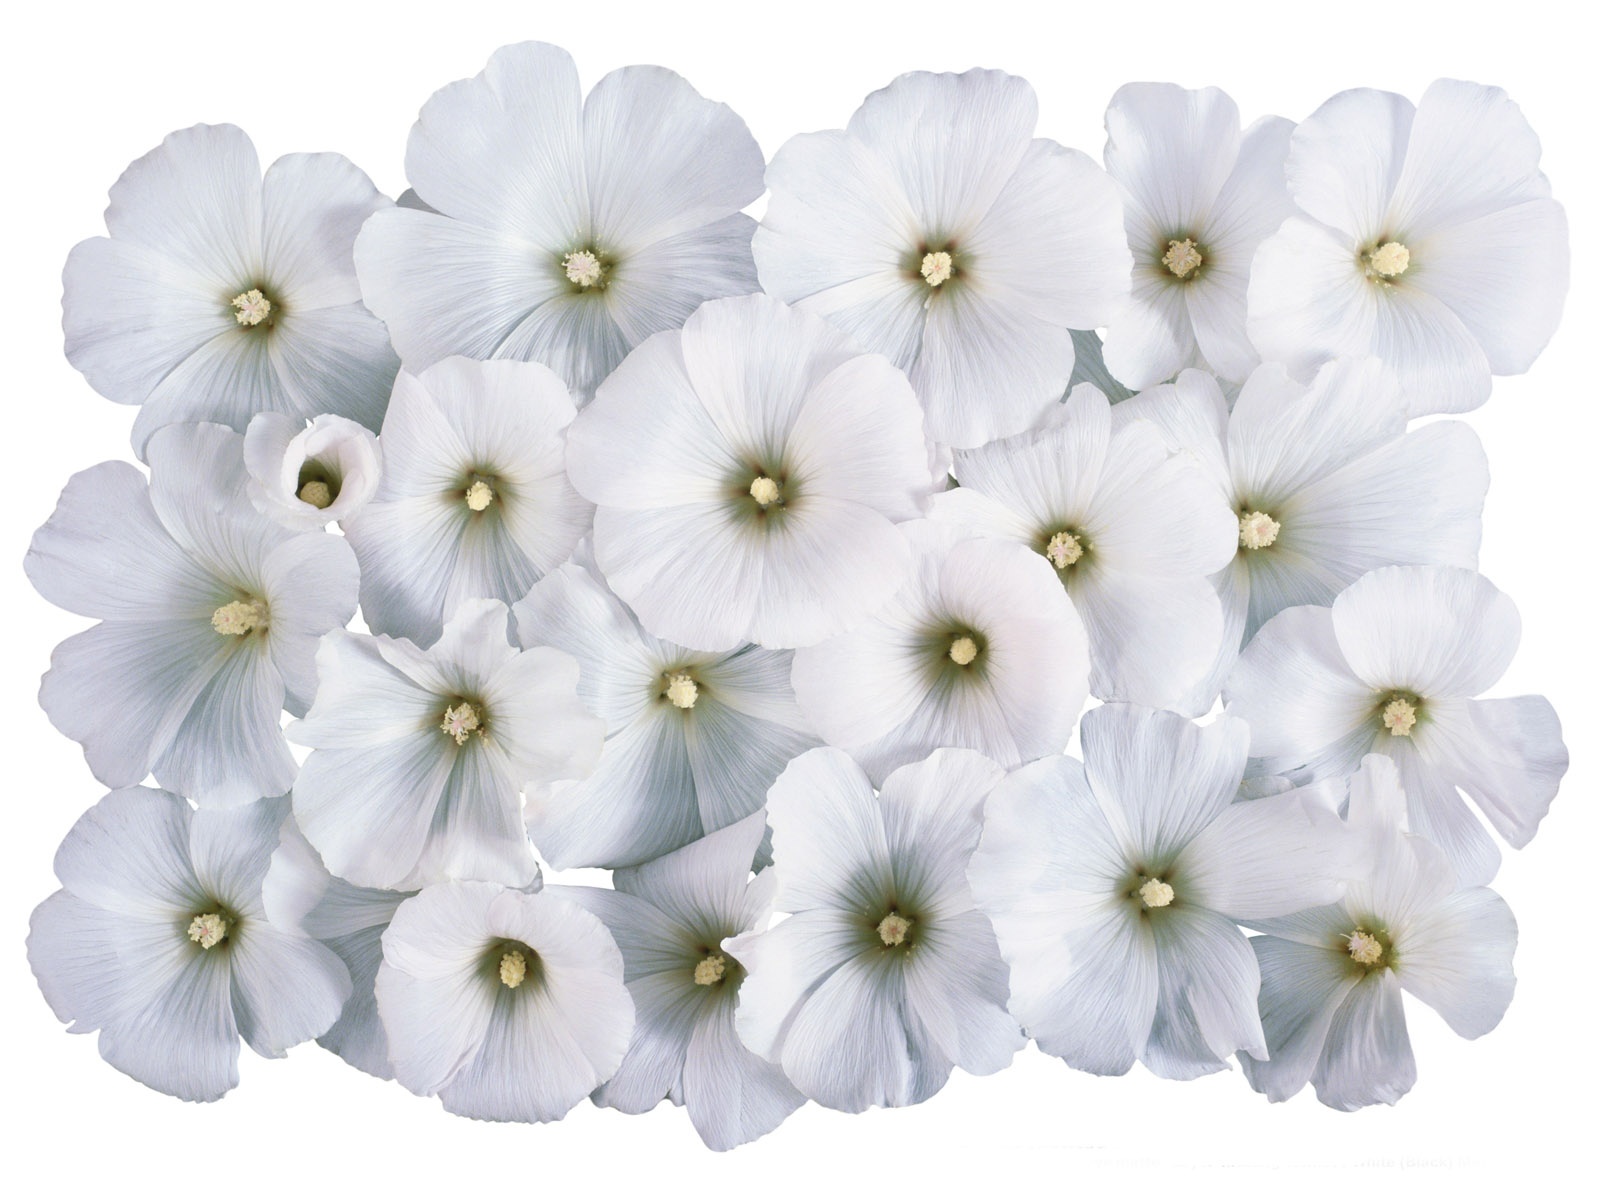 눈같이 흰 꽃 벽지 #4 - 1600x1200